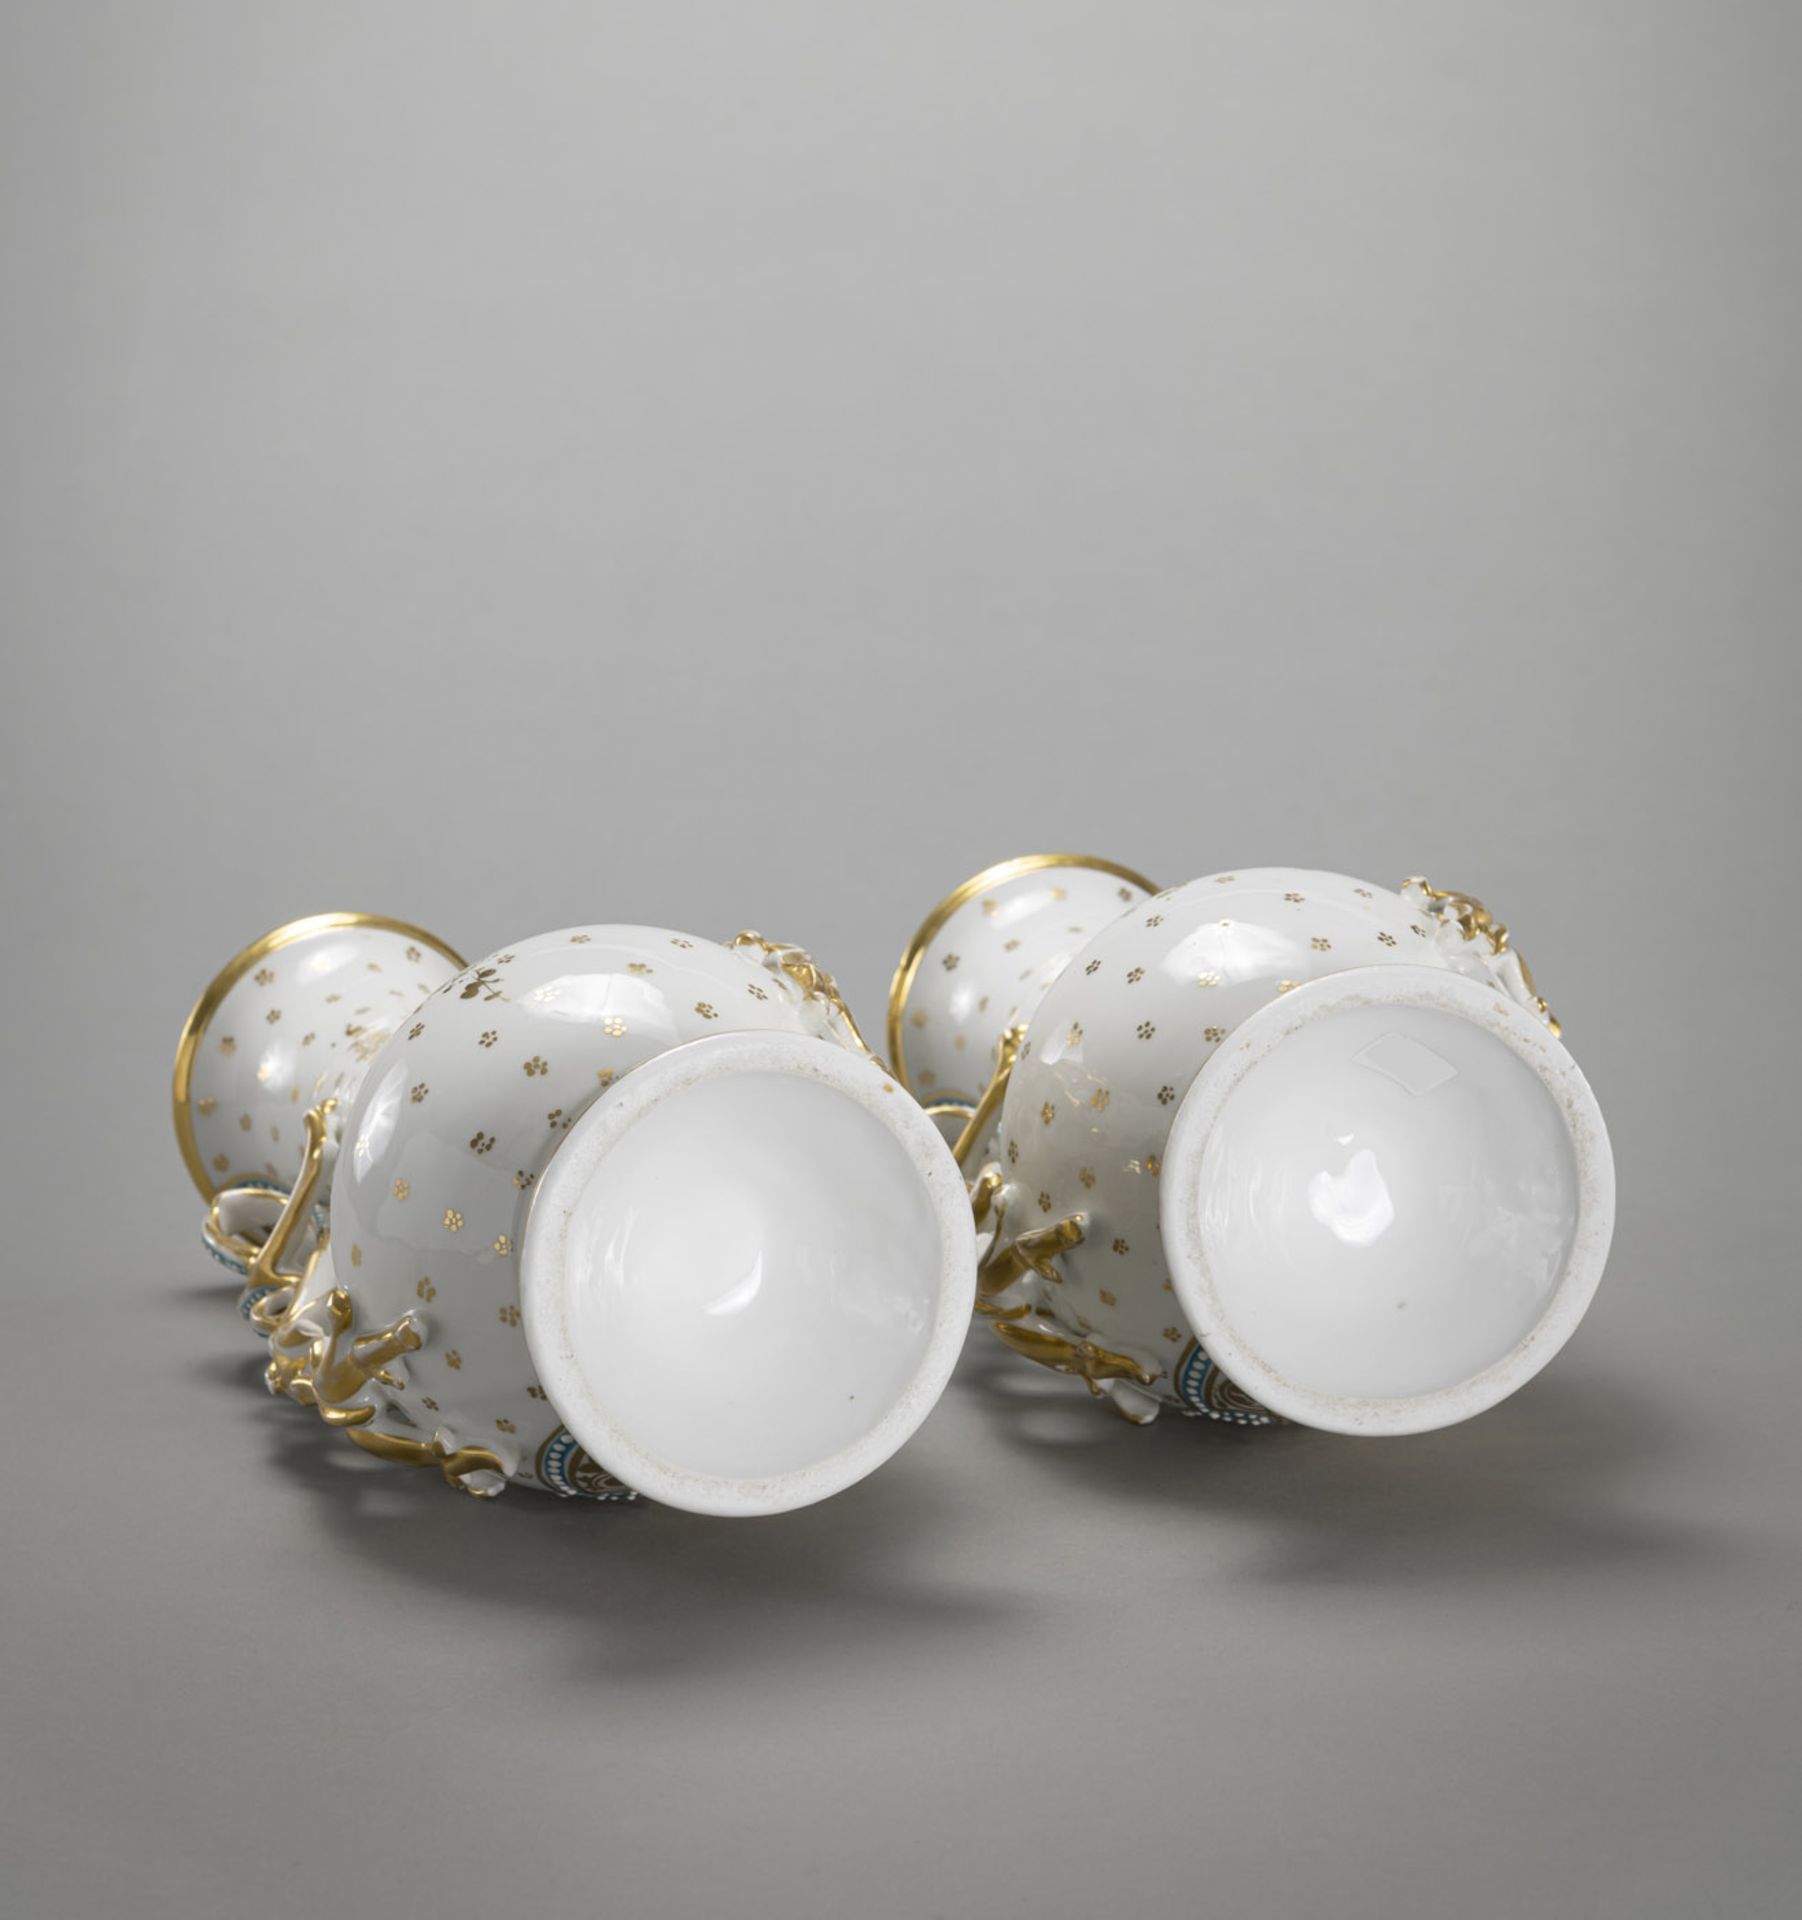 Paar Porzellanvasen mit geschwungenen Handhaben in Form von Weinlaub - Bild 5 aus 5